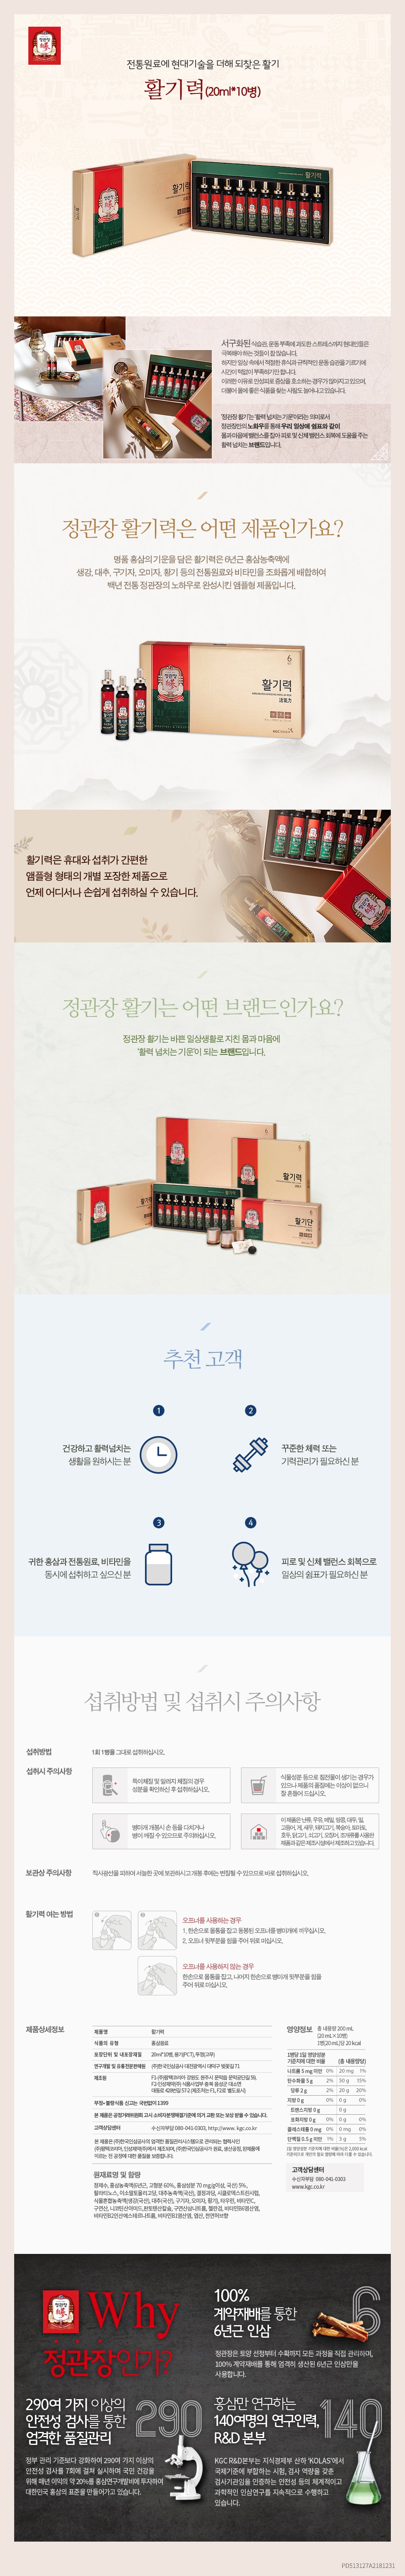 ginseng-rouge-ampoule-20ml10-cheongkwanjang